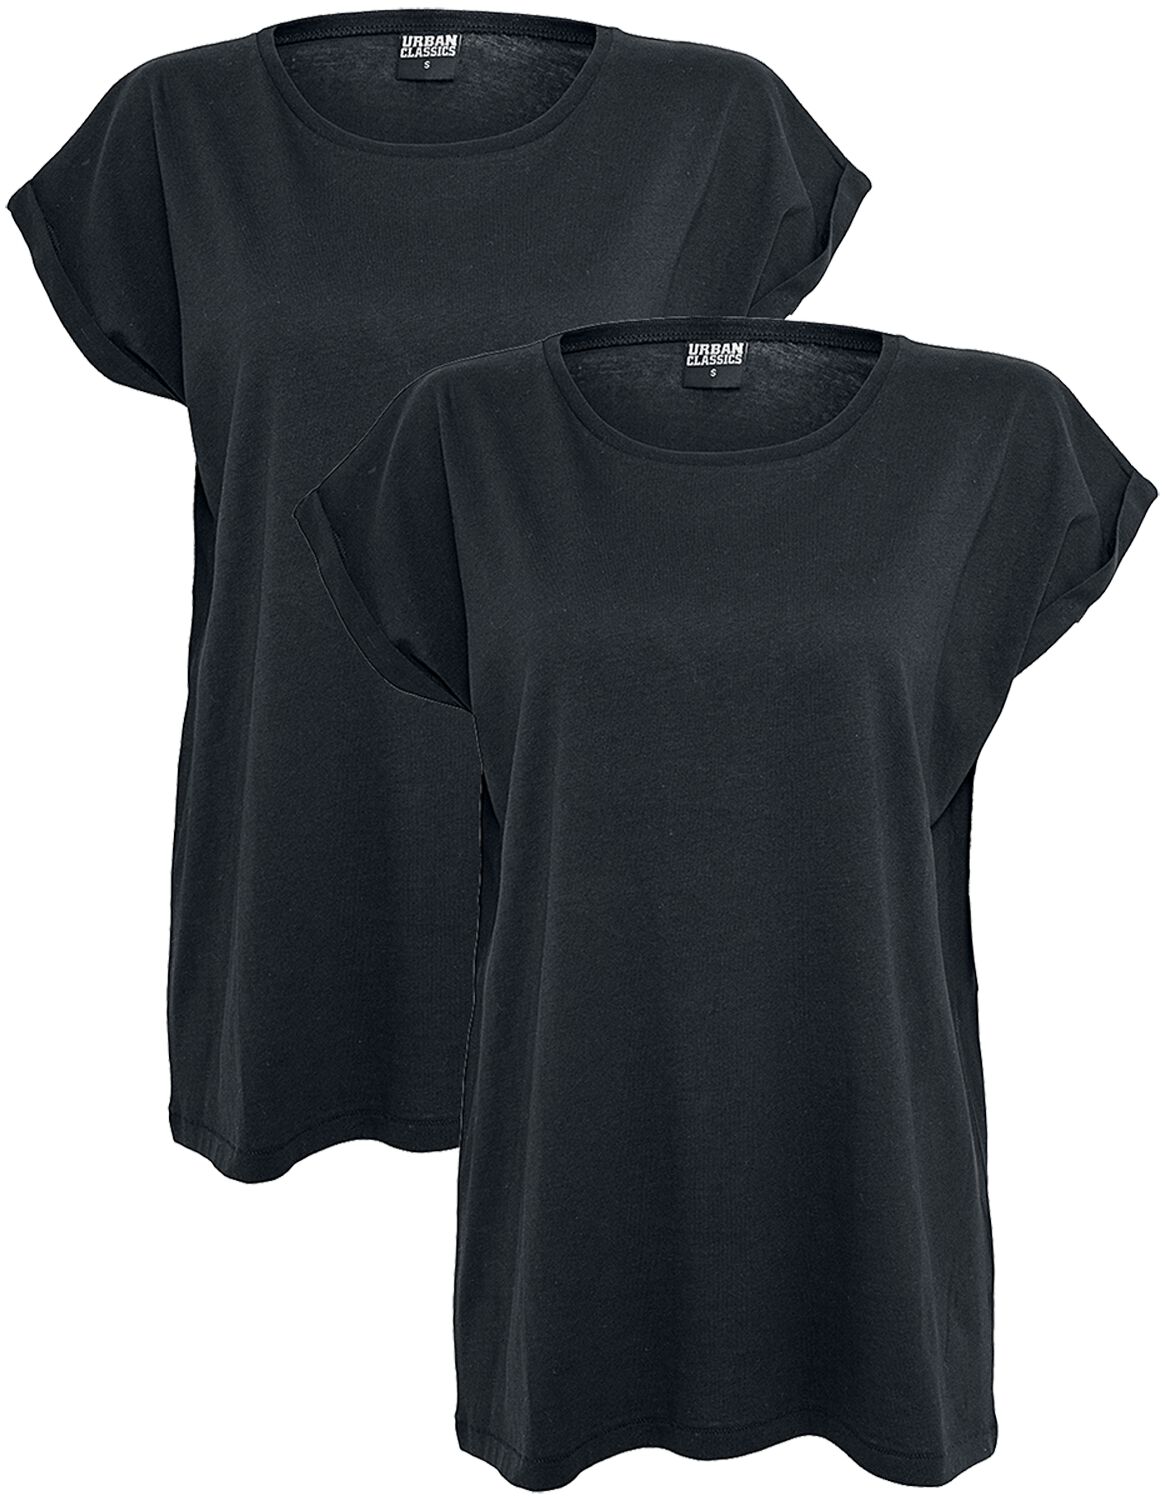 Urban Classics T-Shirt - Ladies Extended Shoulder Tee 2 Pack - XS bis 5XL - für Damen - Größe S - schwarz